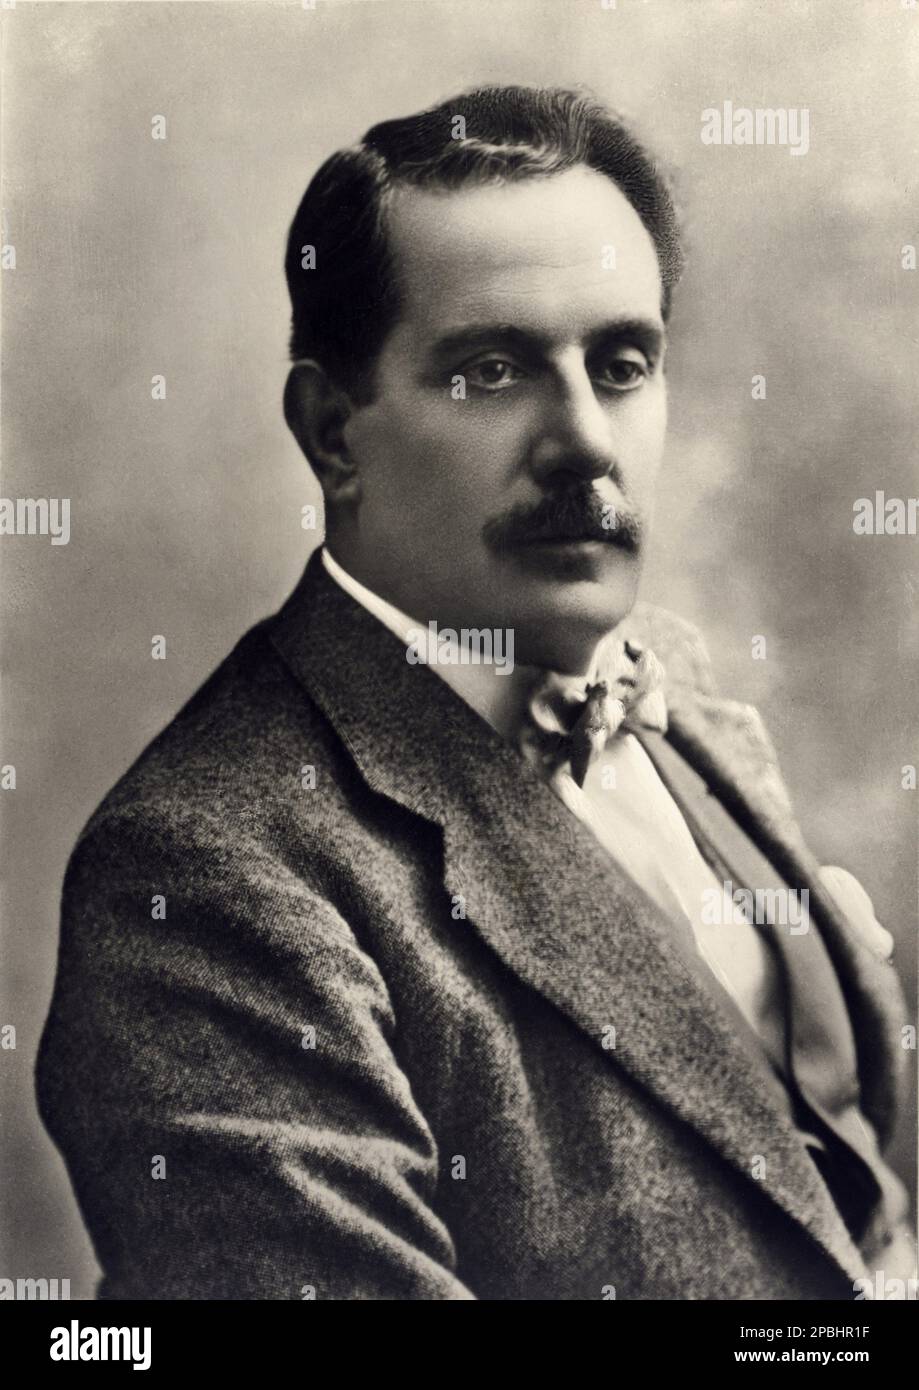 Il celebre compositore italiano GIACOMO PUCCINI 1858 - 1924 ) - OPERA LIRICA - COMPOSITORE - MUSICA - ritratto - ritratto - baffi - baffi - CLASSICA - CLASSICA - classica - COMPOSITORE LIRICO - ritratto - ritratto - cravatta - papillon - cravatta - MUSICA - musica ---- ARCHIVIO GBB Foto Stock